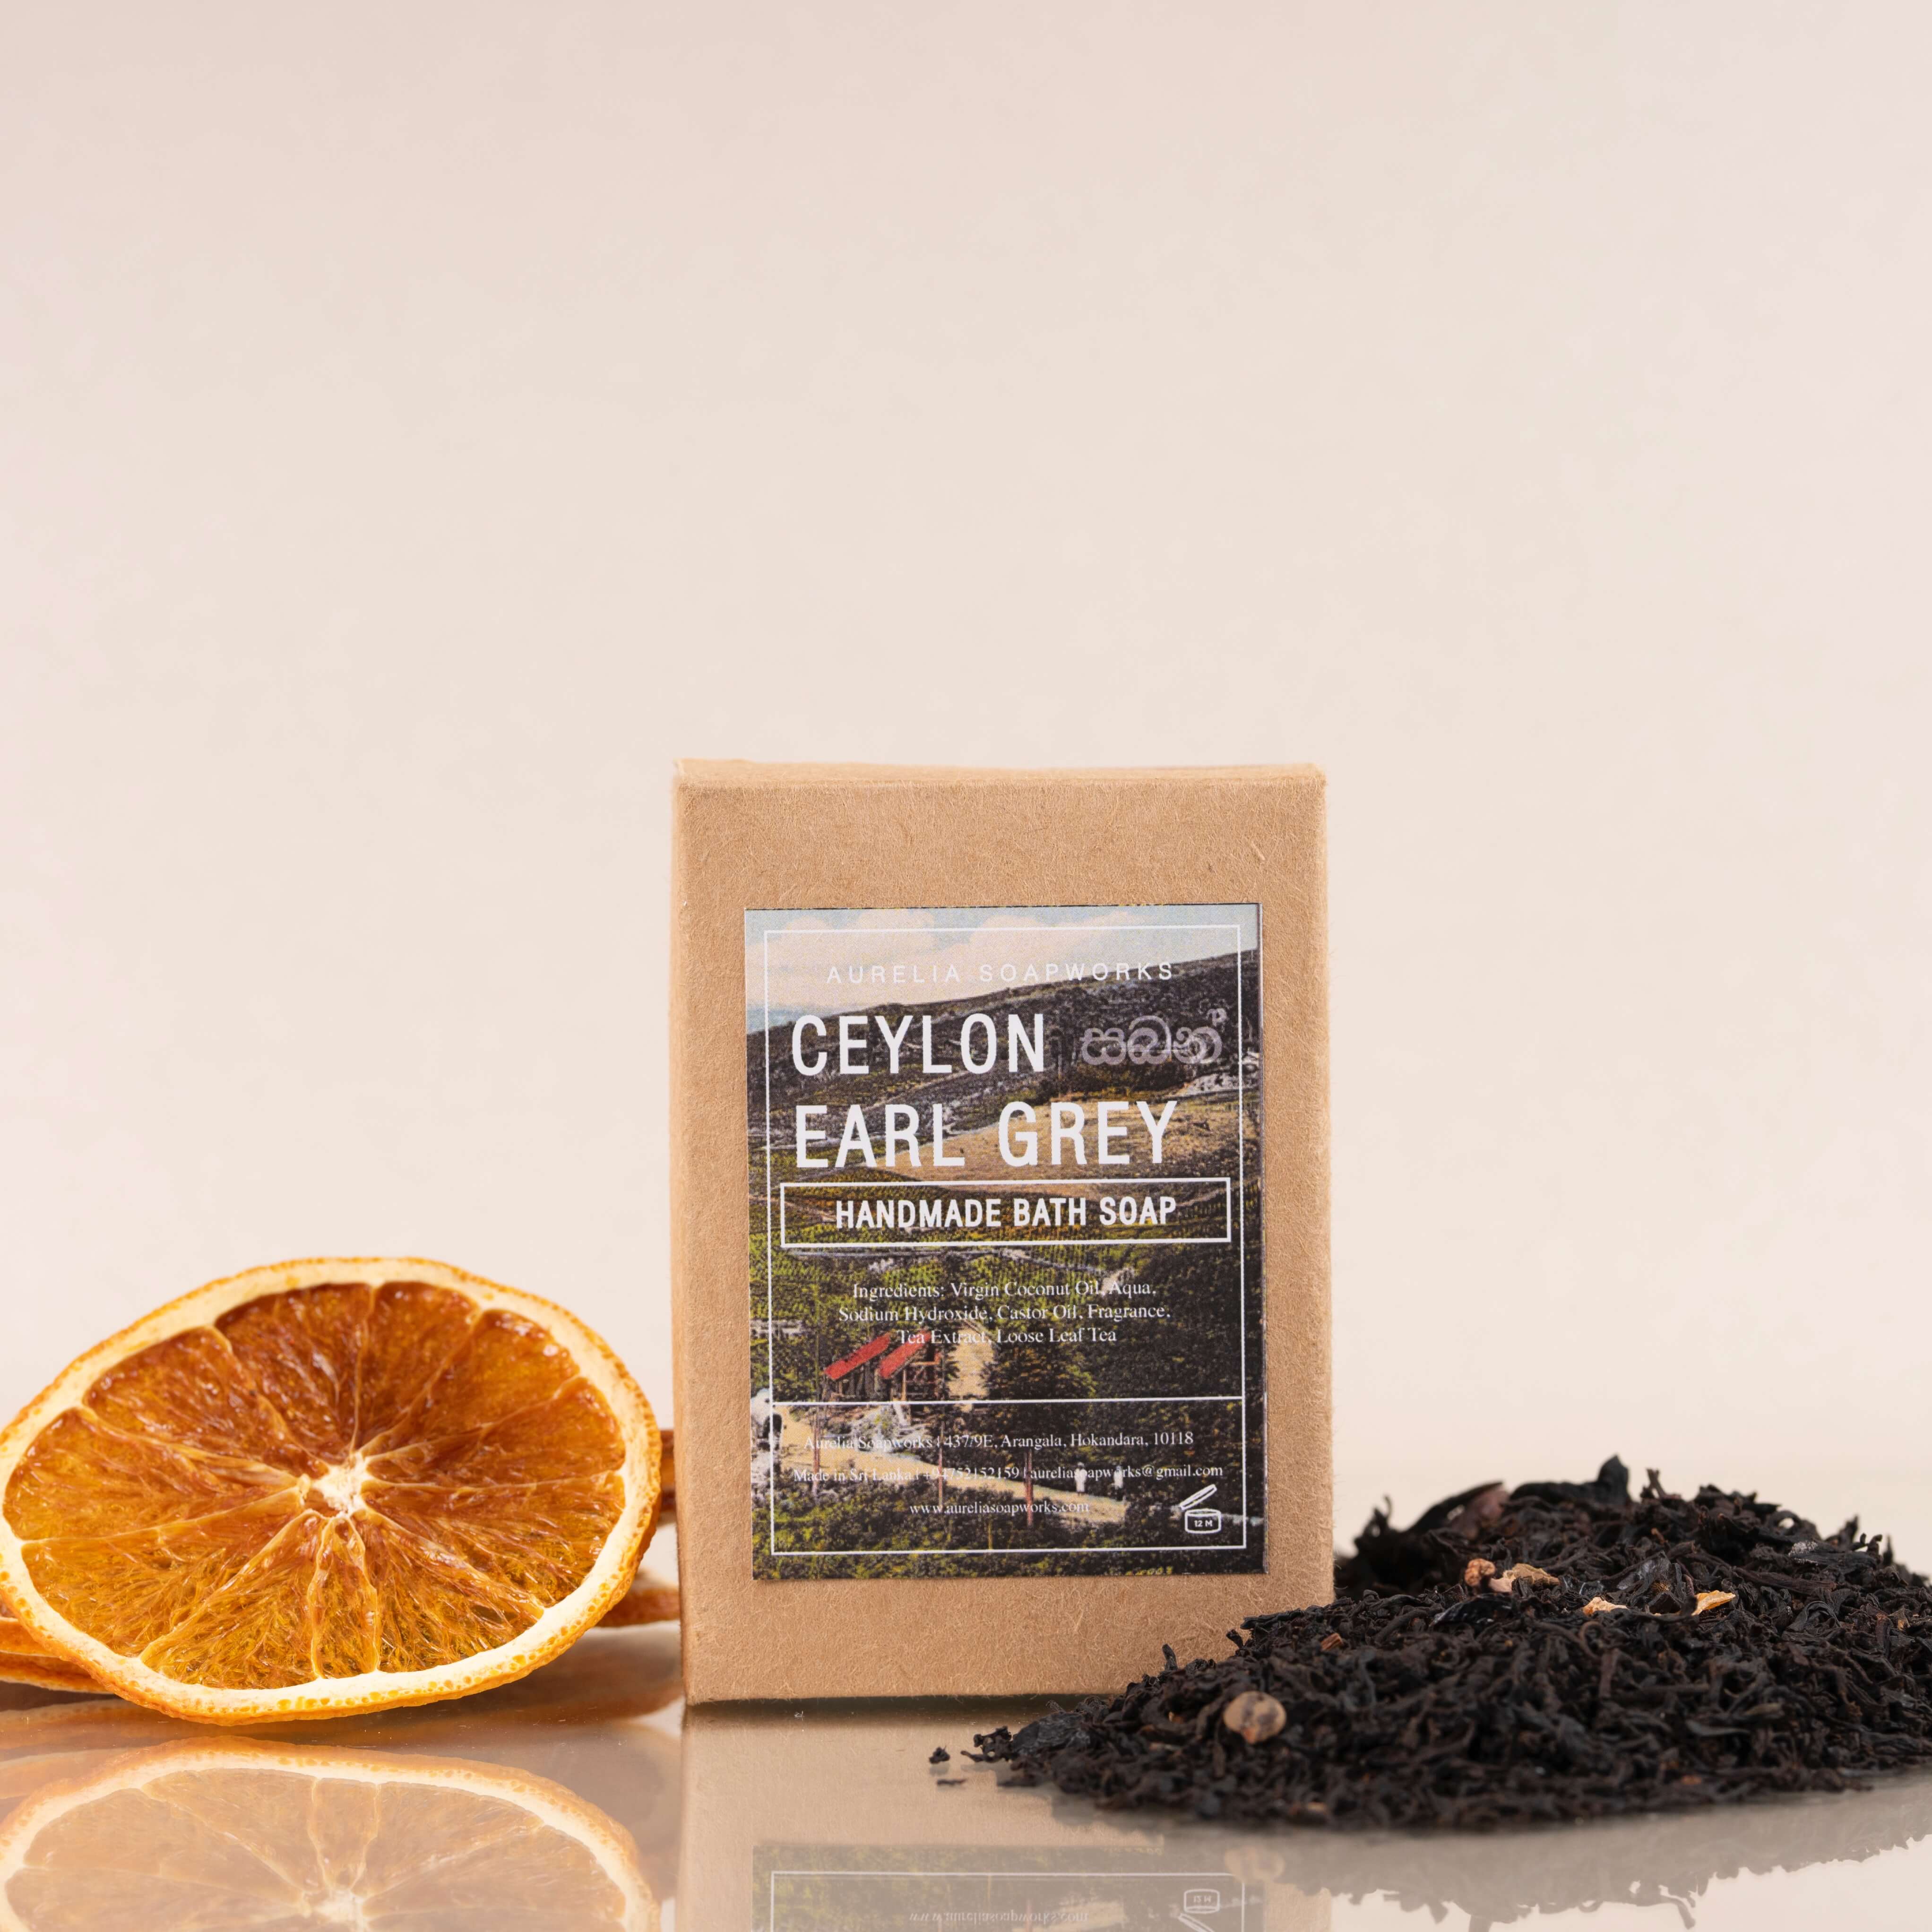 Ceylon earl grey bath soap